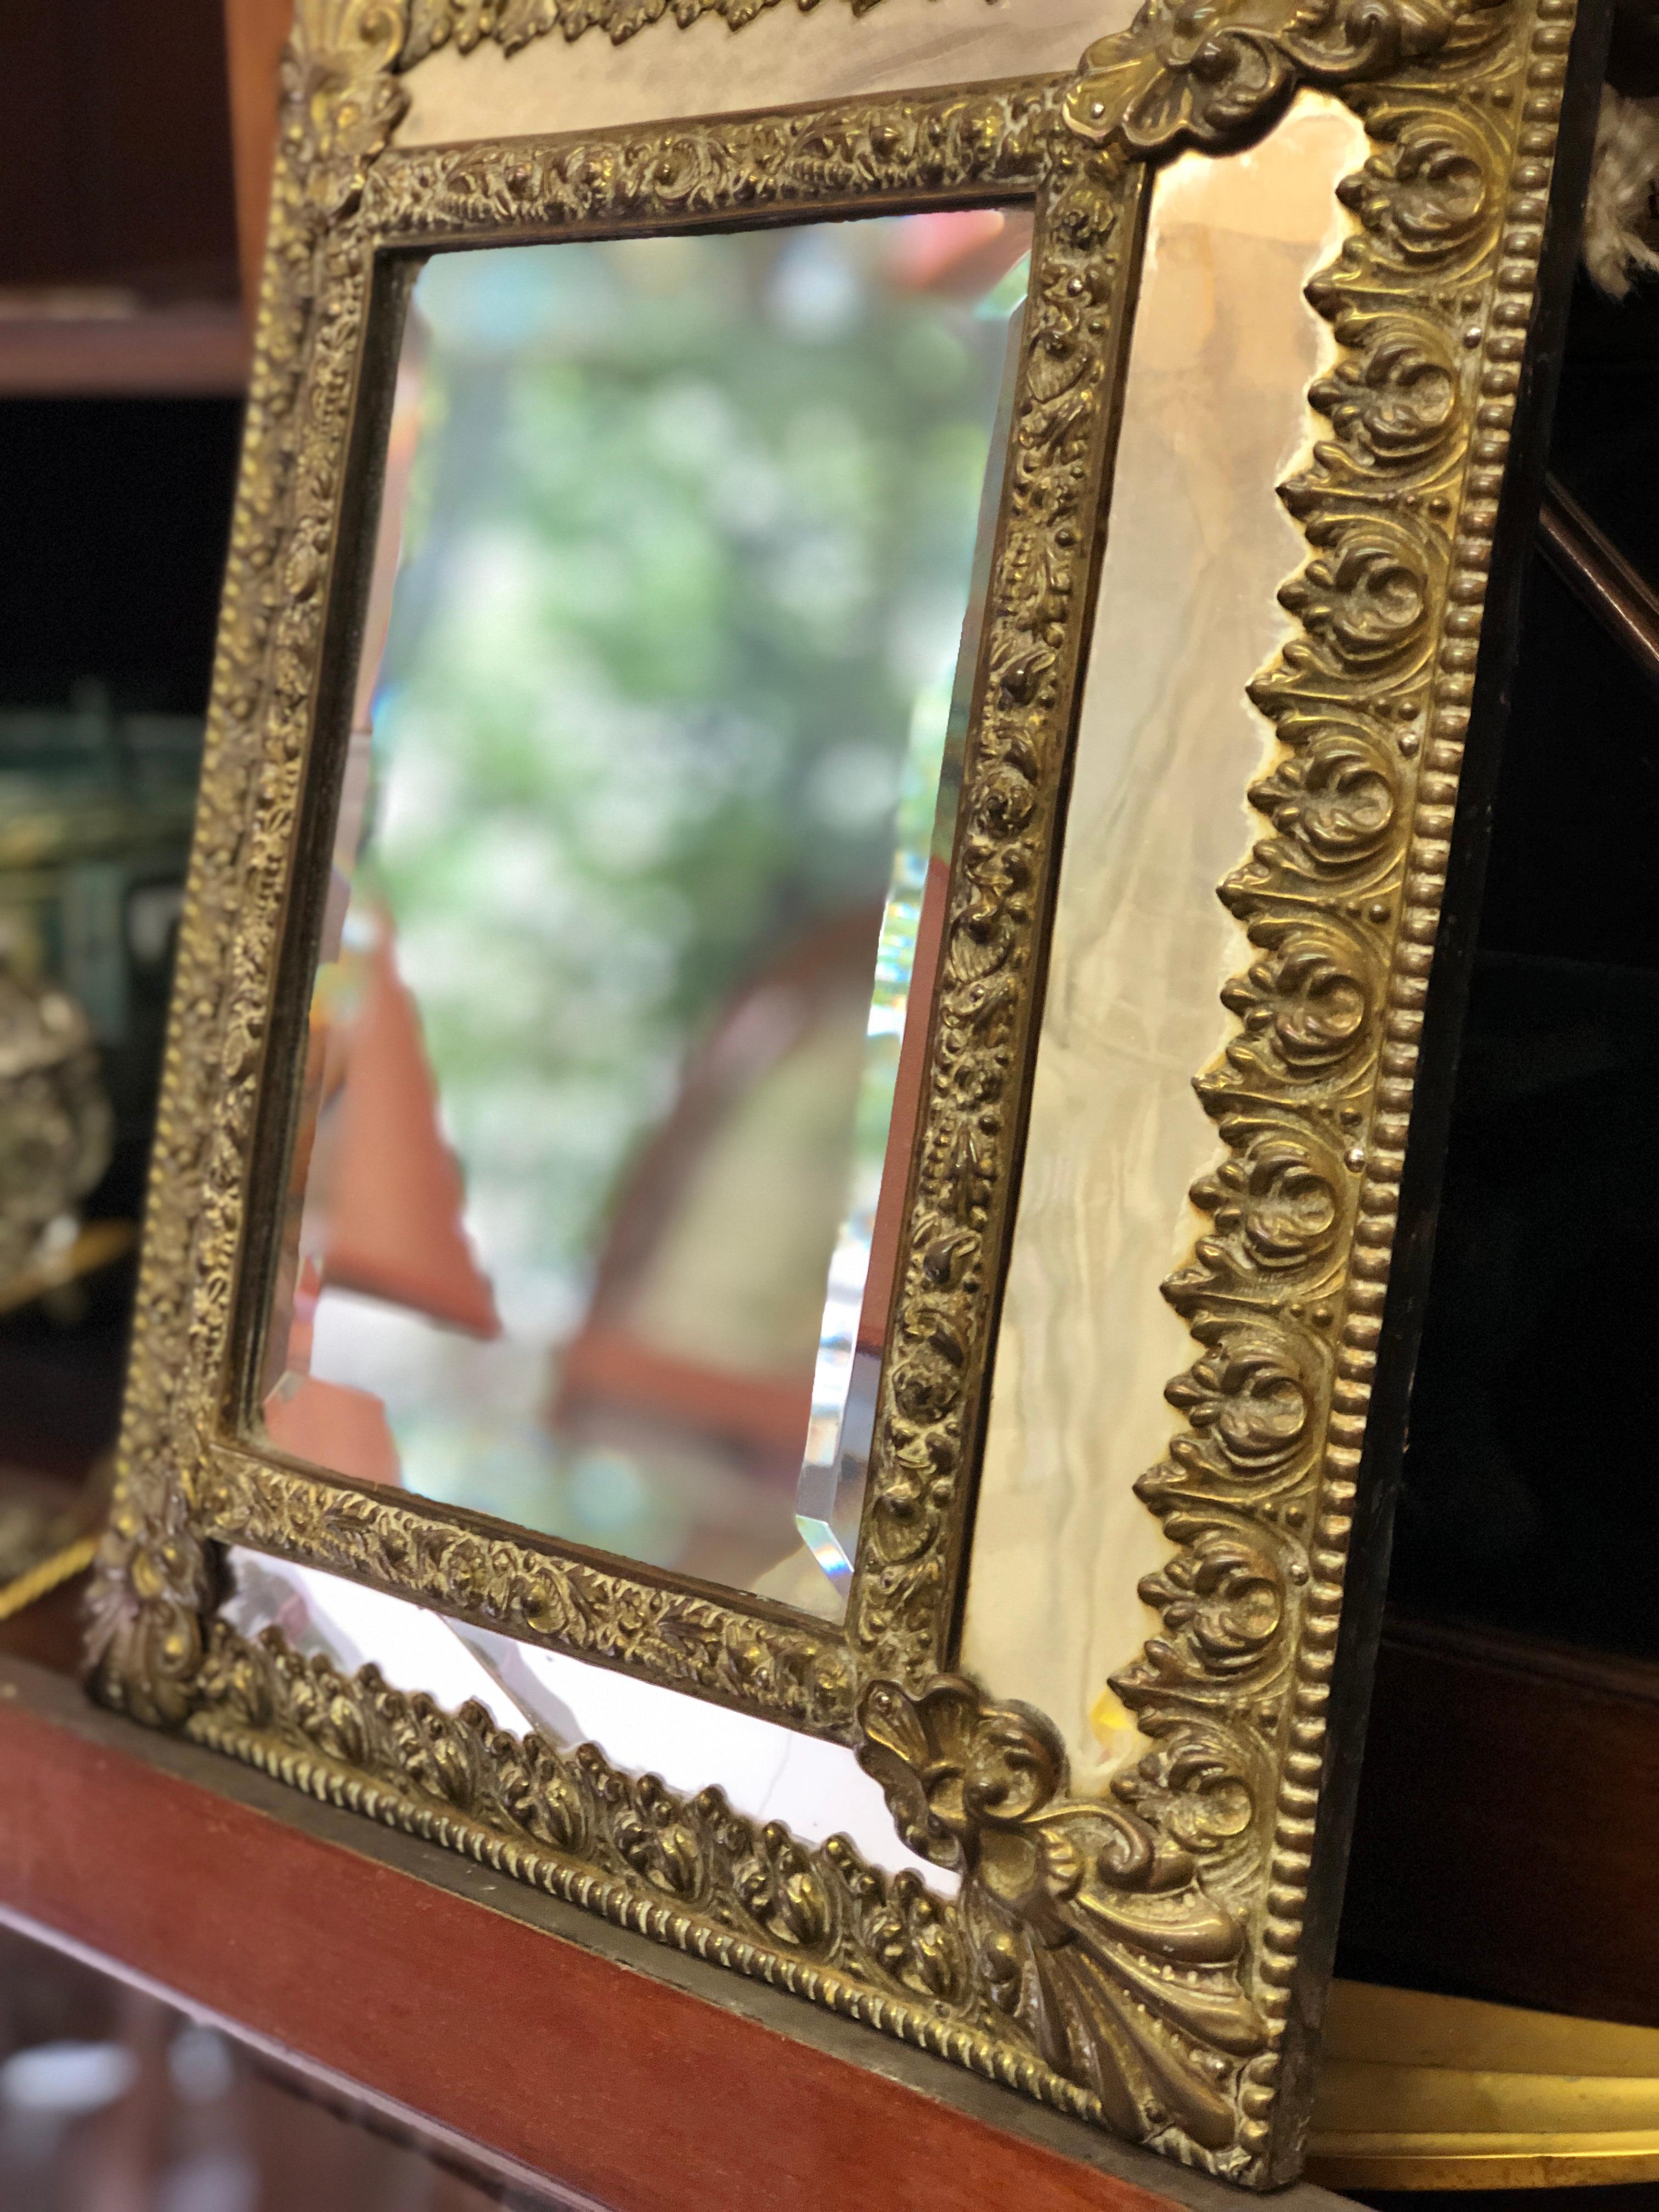 Dieser schöne Spiegel ist aus dunkelsilbernem, repoussiertem Messing mit allen Originalteilen gefertigt. Datiert Ende des 19. Jahrhunderts in gutem Zustand. Es gibt nur ein kleines zerbrochenes Stück Glas im unteren Teil, wie Sie auf den Bildern